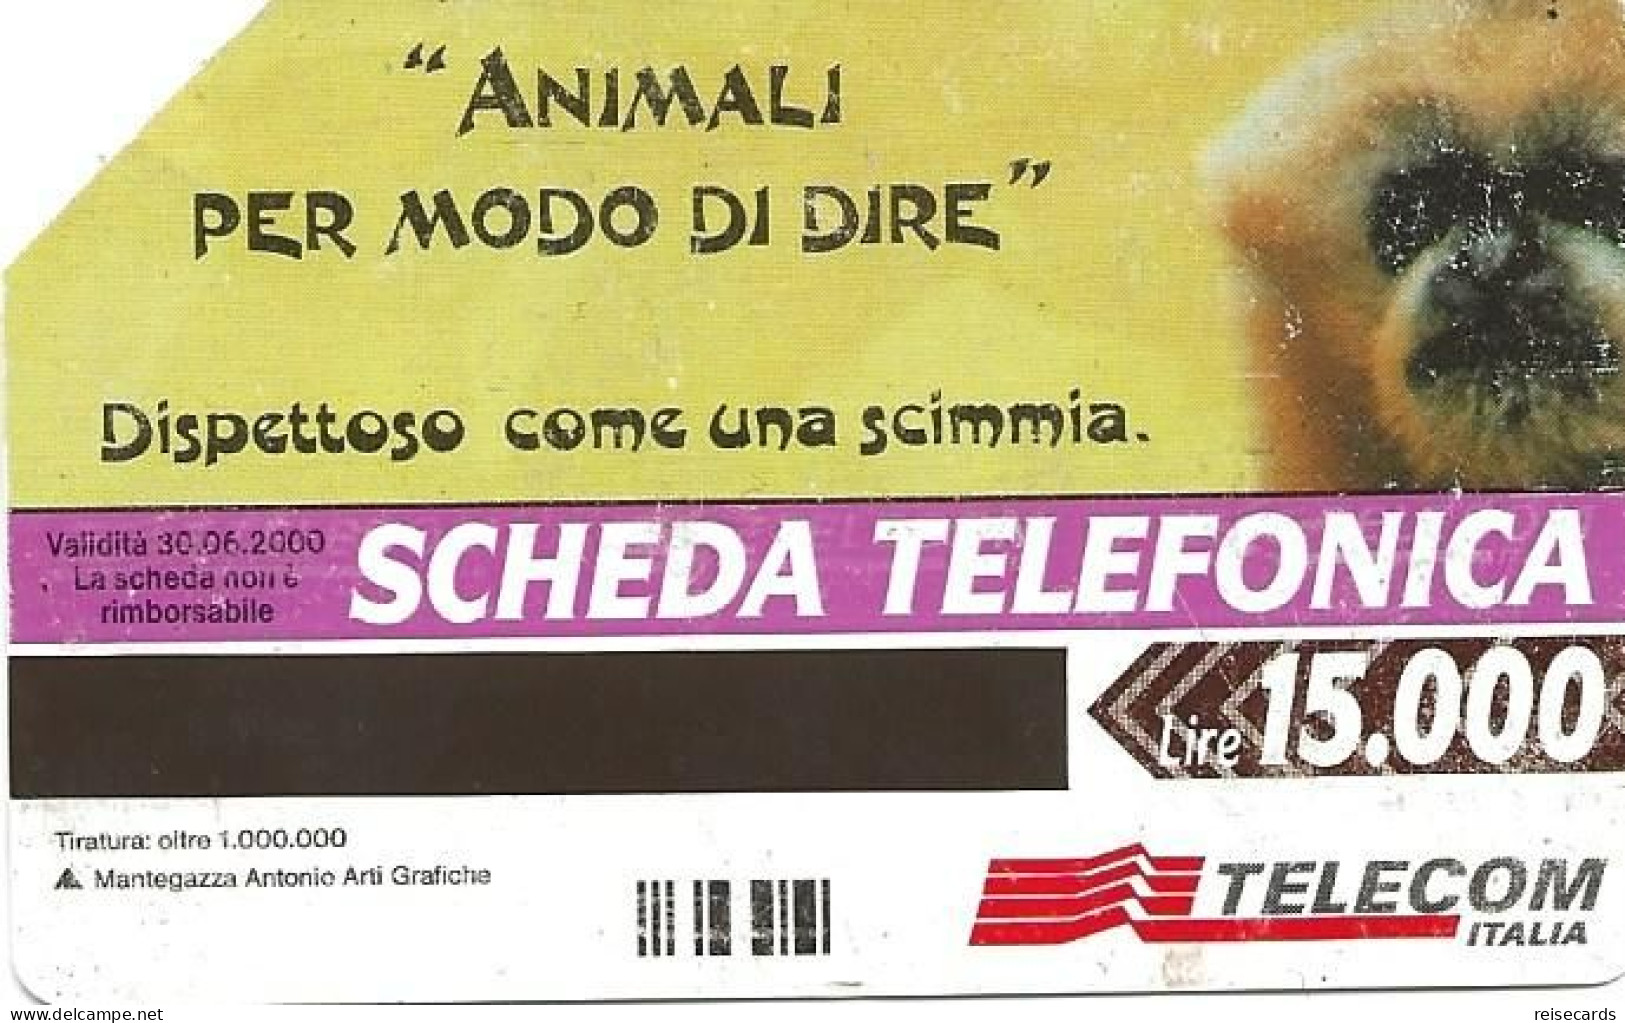 Italy: Telecom Italia - Animali Per Modo Di Dire - Public Advertising